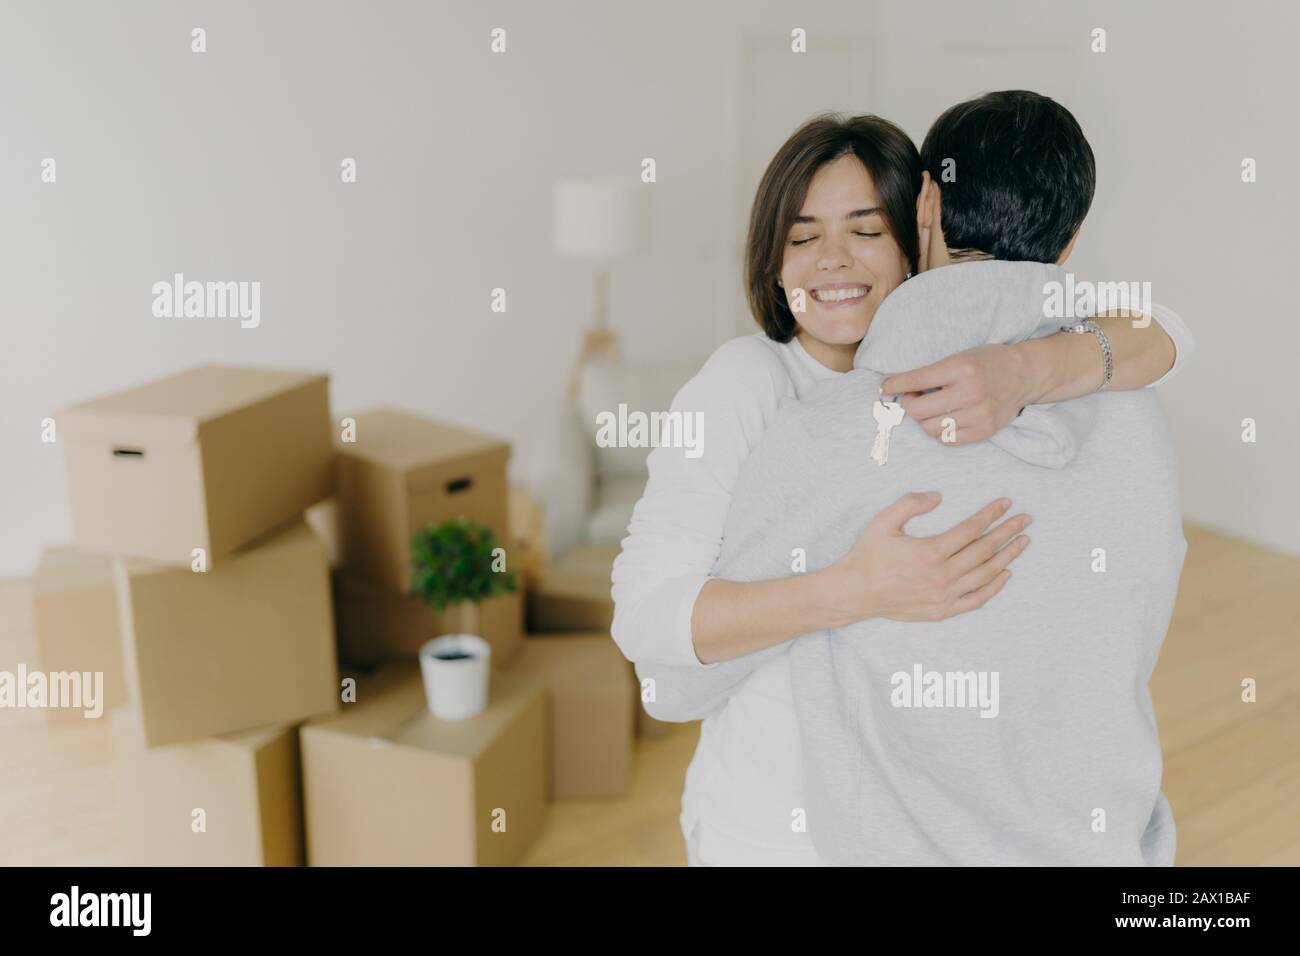 Fröhliche brünette lächelnde Frau umarmt ihren Mann mit Liebe, hält Schlüssel, kauft gemeinsam das erste Haus, kauft neues Grundstück, posiert in unmöbliertem Raumwit Stockfoto